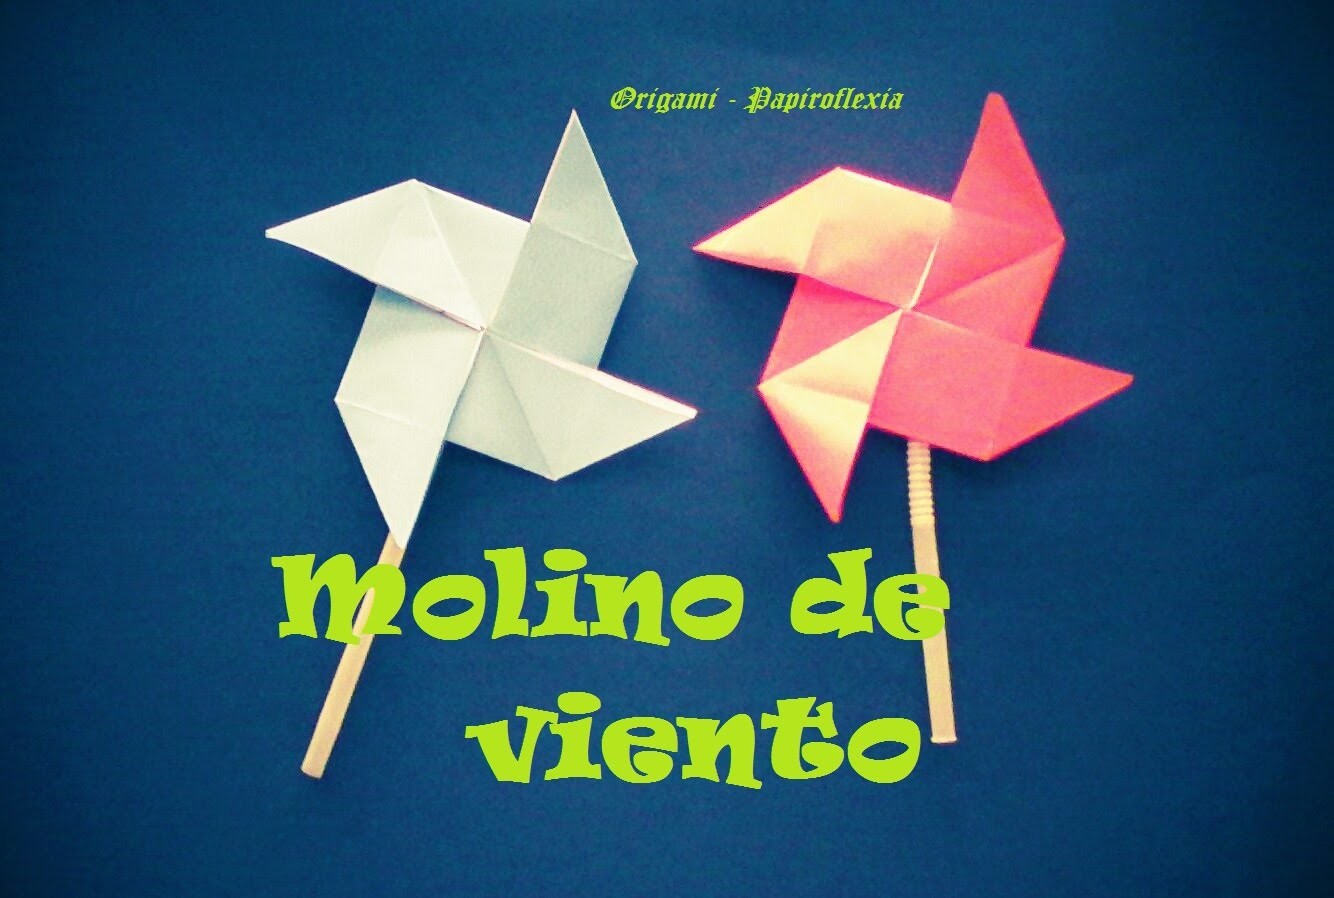 Origami - Papiroflexia. Molino de viento, muy fácil